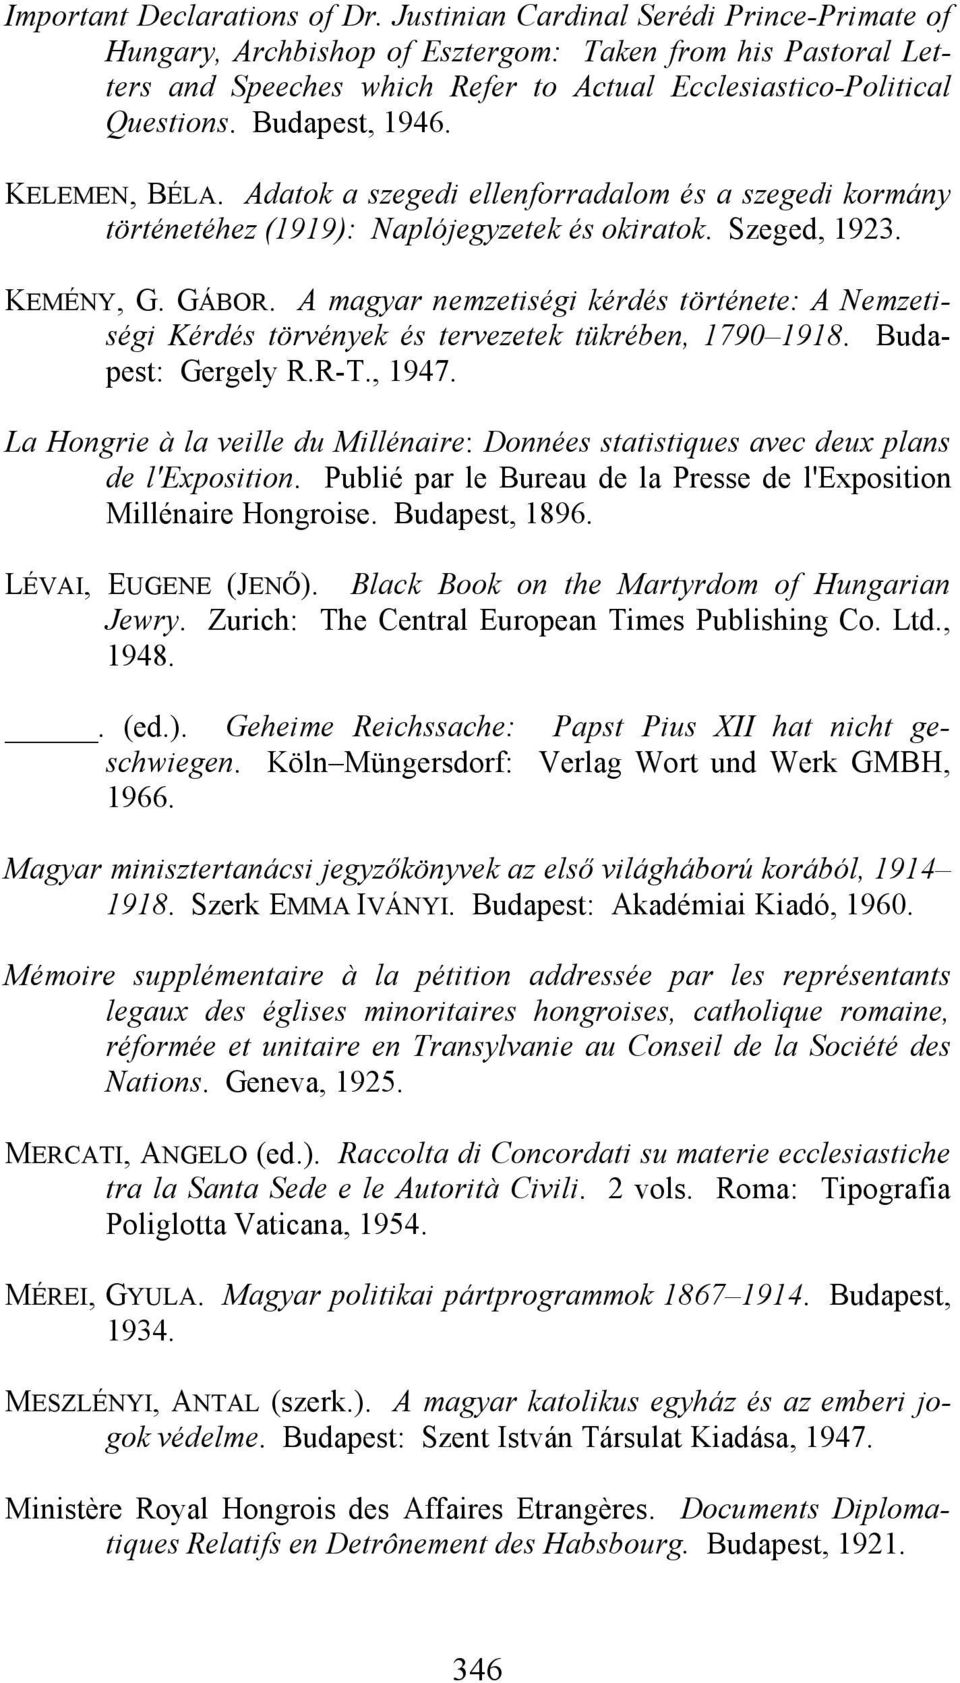 KELEMEN, BÉLA. Adatok a szegedi ellenforradalom és a szegedi kormány történetéhez (1919): Naplójegyzetek és okiratok. Szeged, 1923. KEMÉNY, G. GÁBOR.